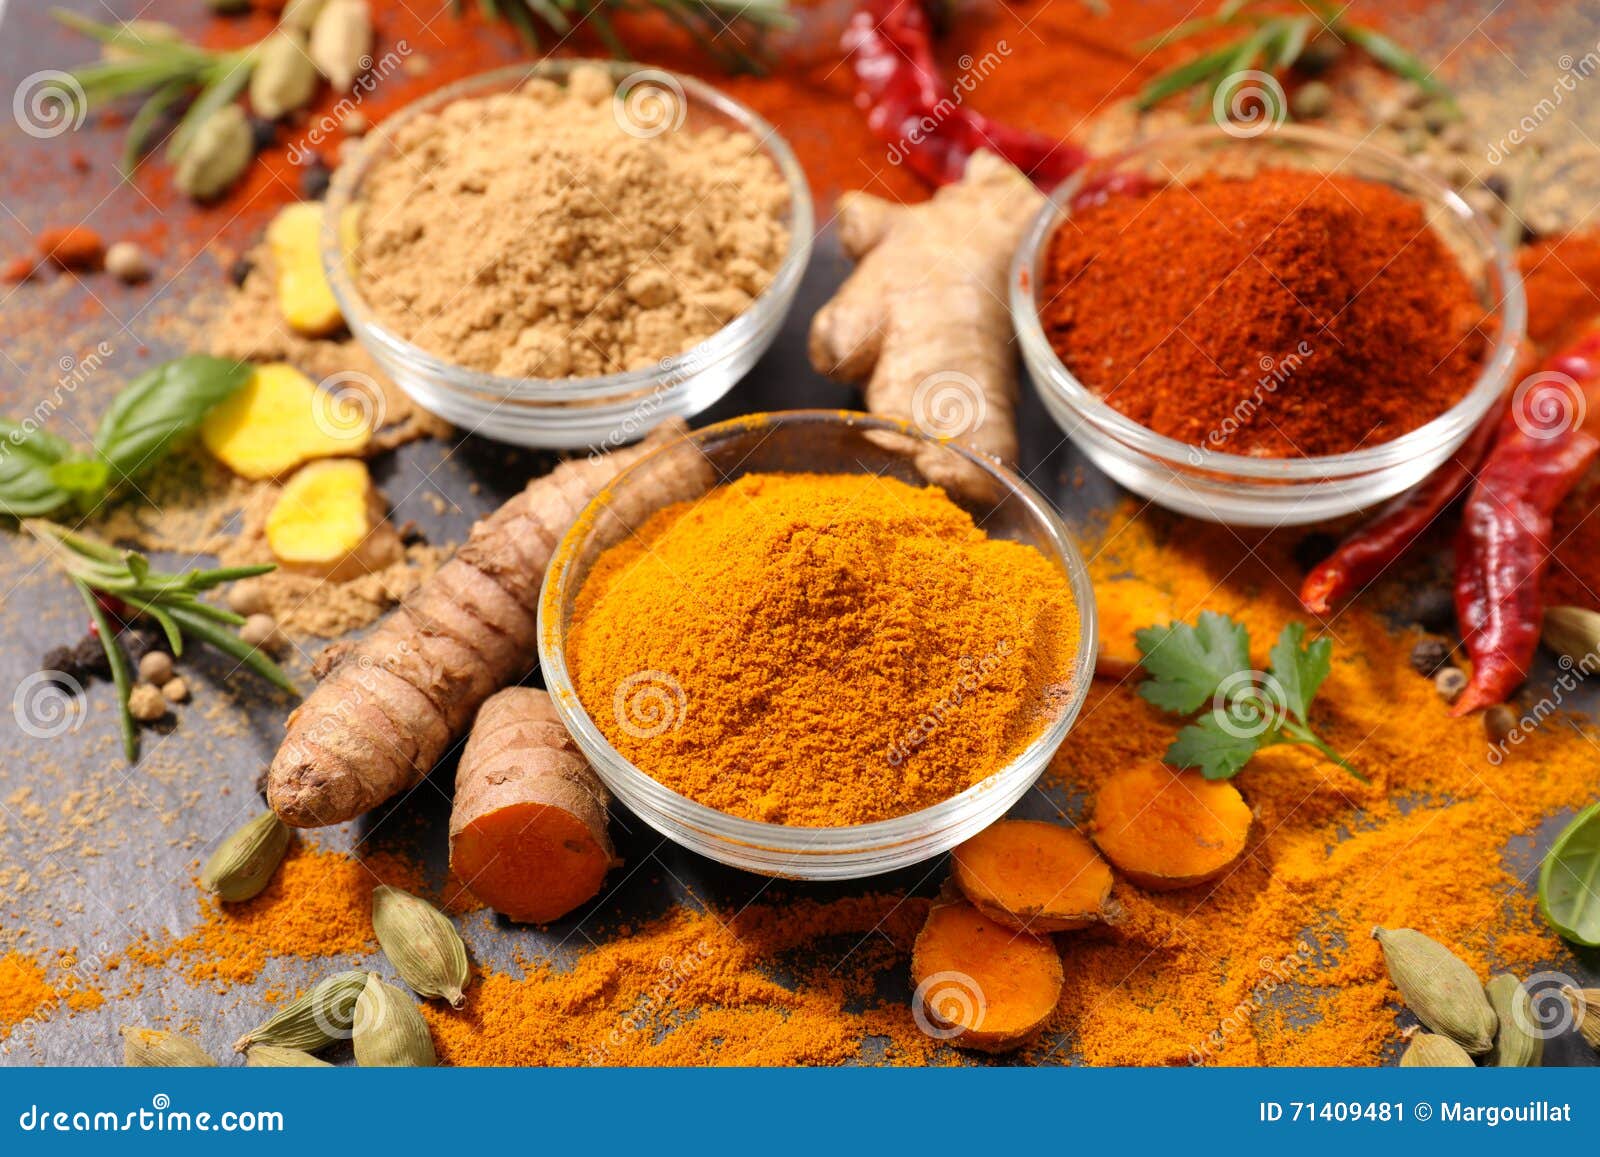 香料 各种印度香料的彩色背景 印度香料和香草背景 调味料、调味品 库存照片 - 图片 包括有 香味, 谷物: 177255258